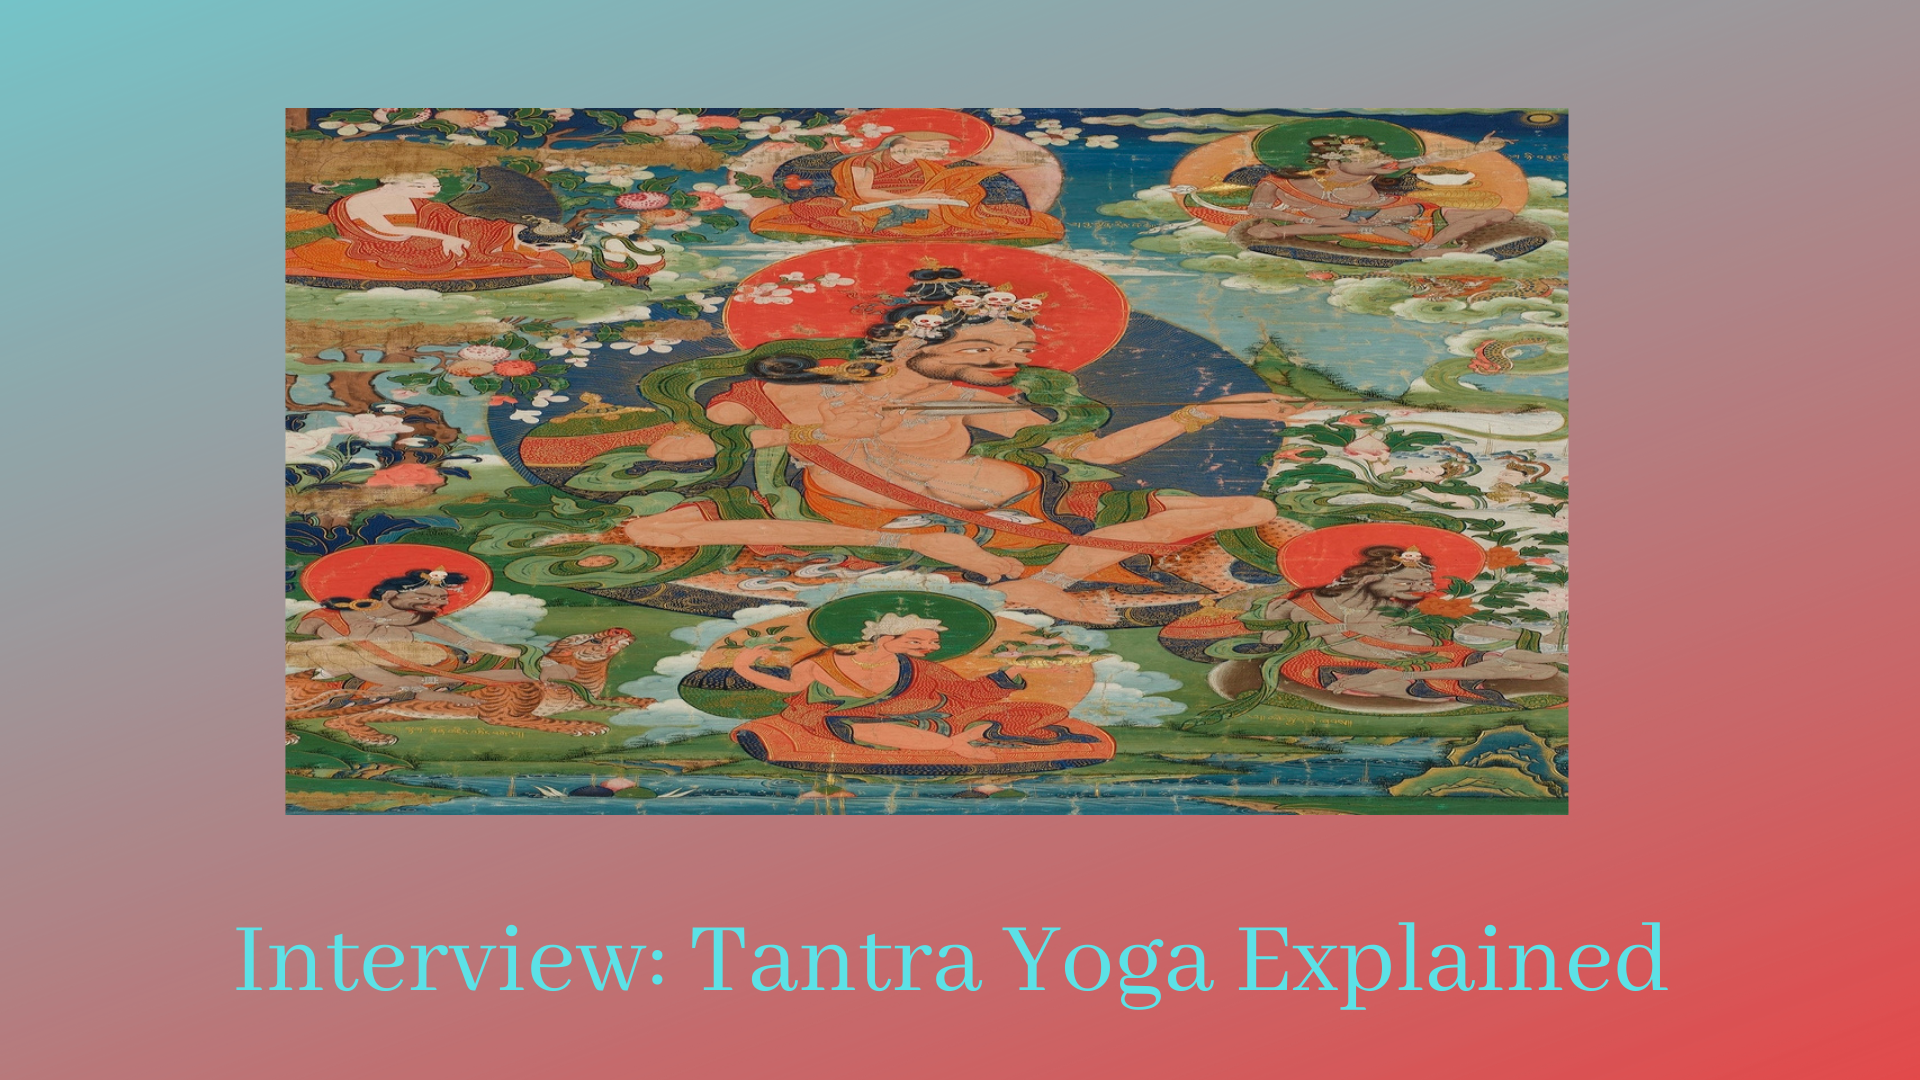 Tantra Yoga Explained